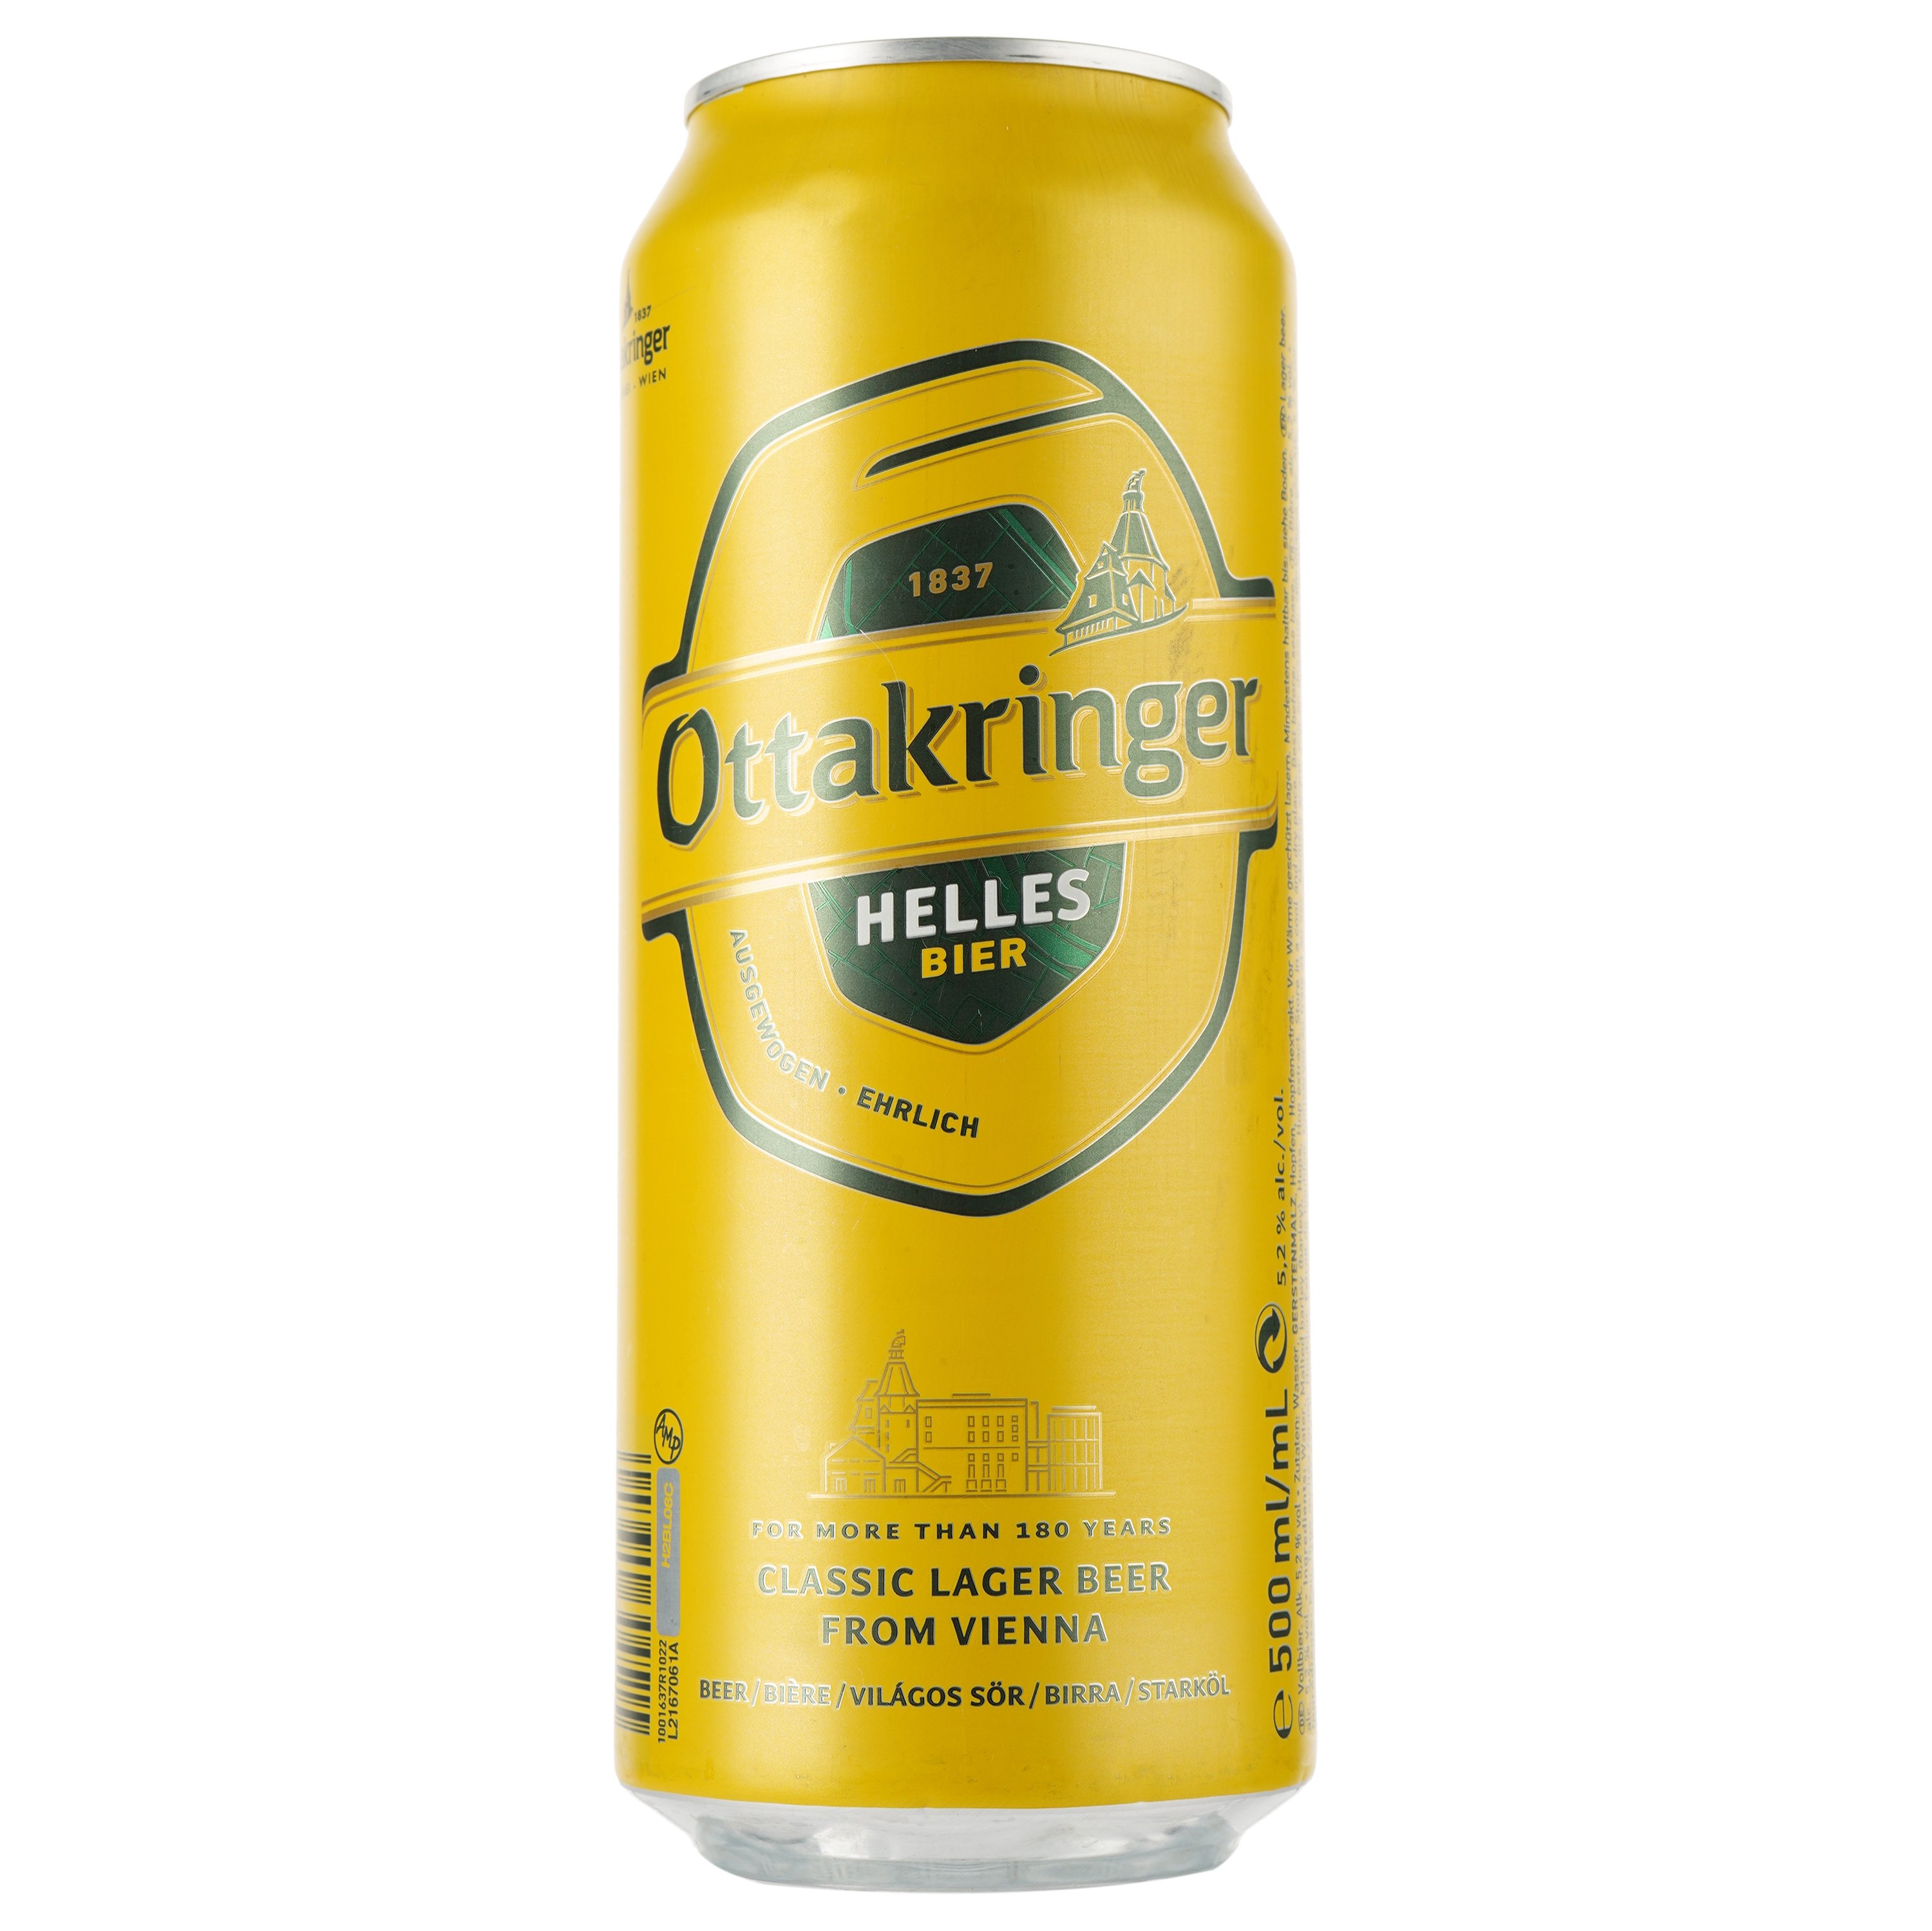 Пиво Ottakringer Helles, світле, фільтроване, 5,2%, з/б, 0,5 л - фото 1